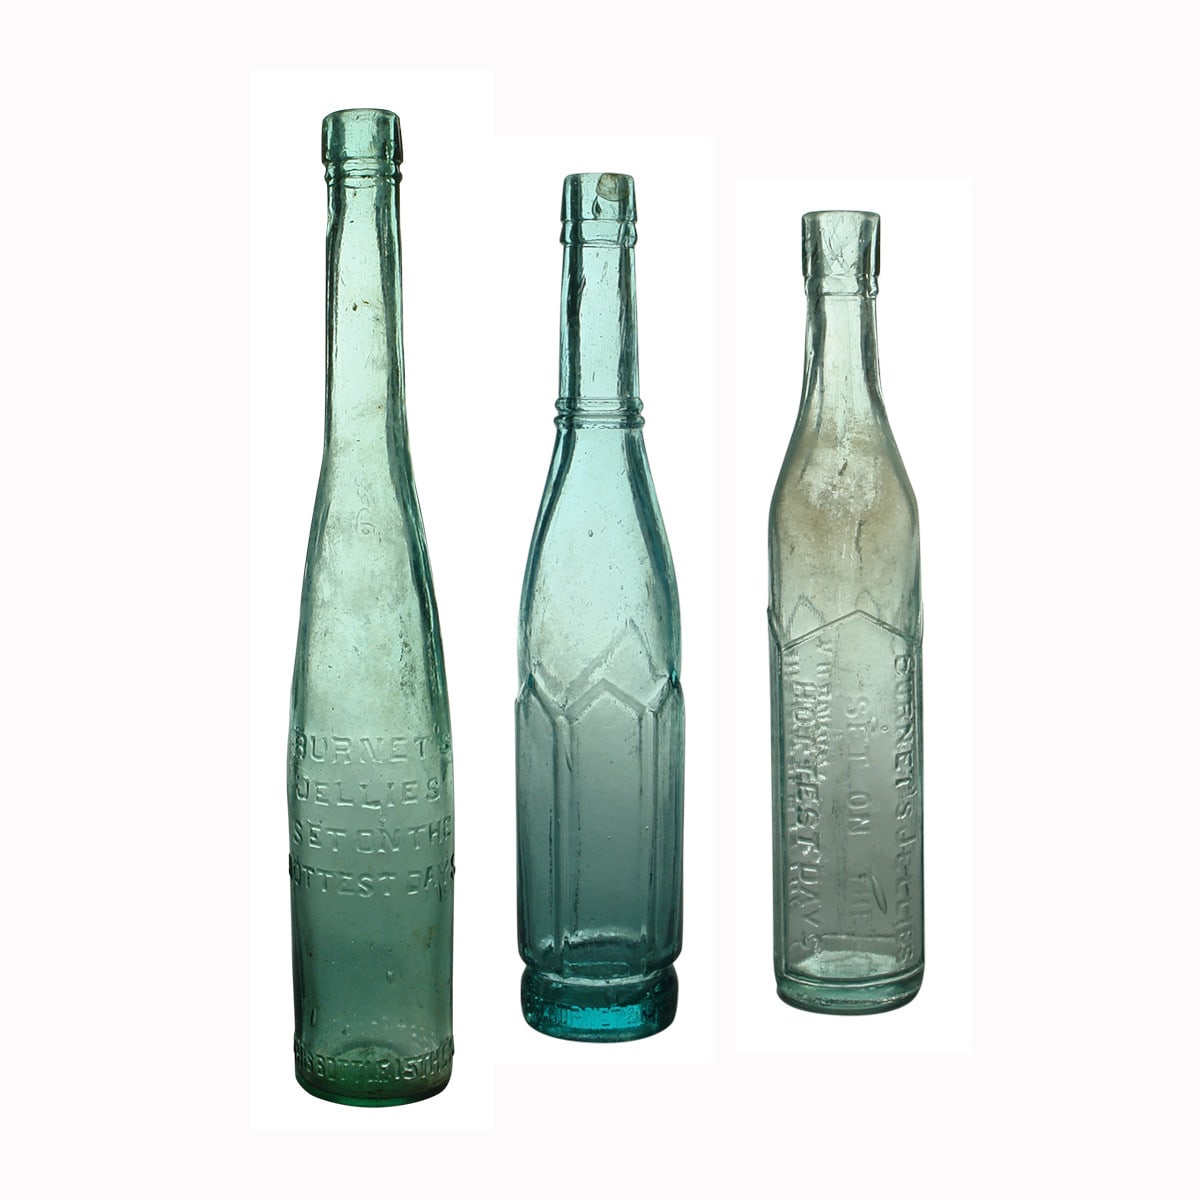 Three Burnet's advertising bottles.